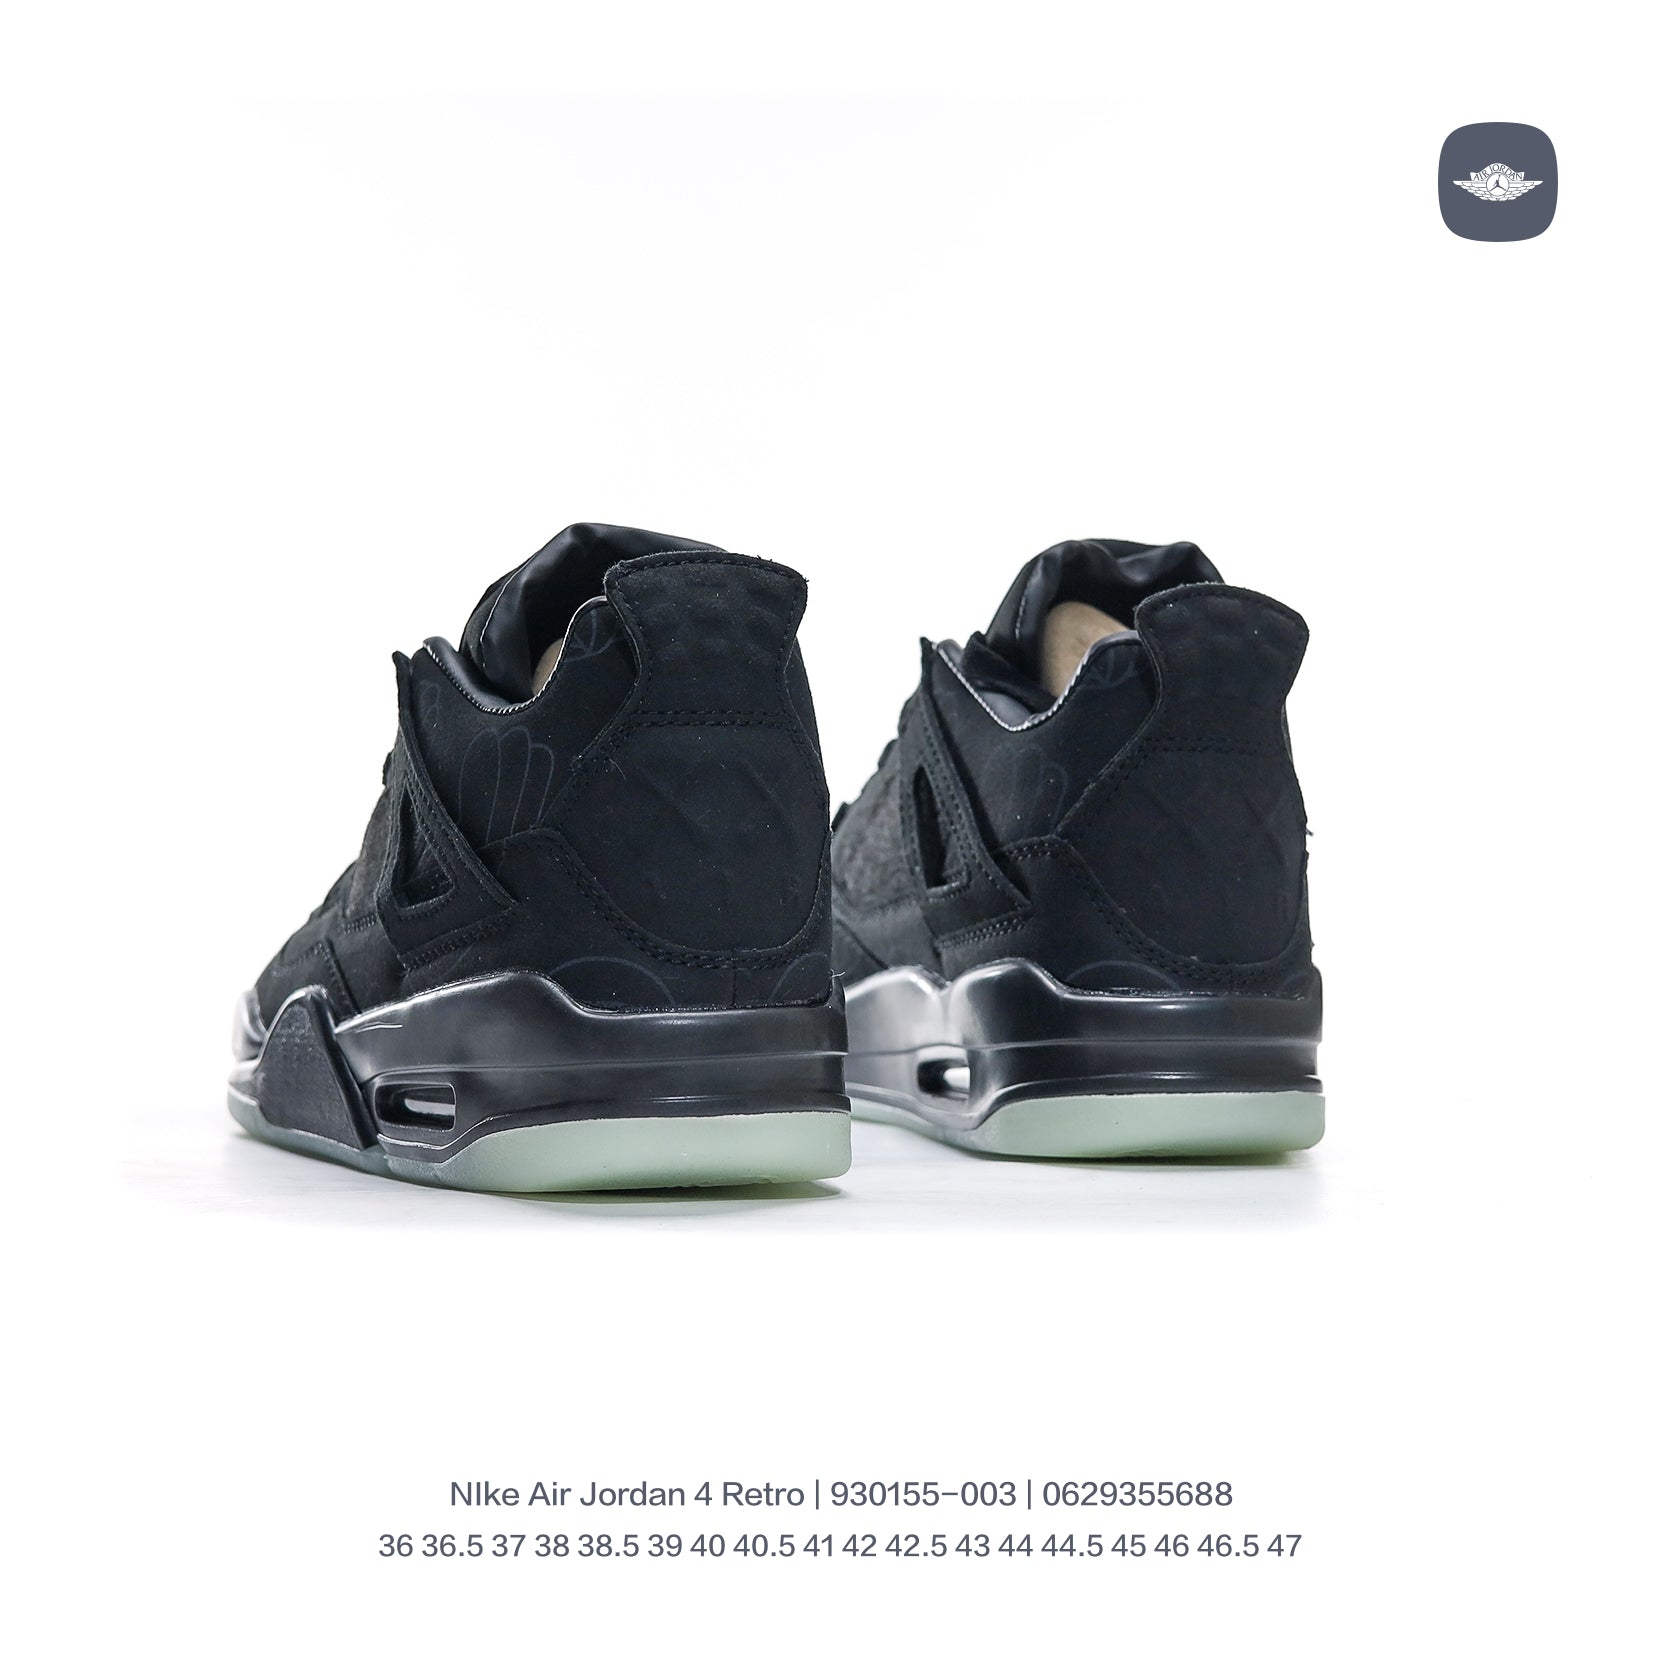 Nike sneakers Air Jordan 4 new "Cool Grey" men's a